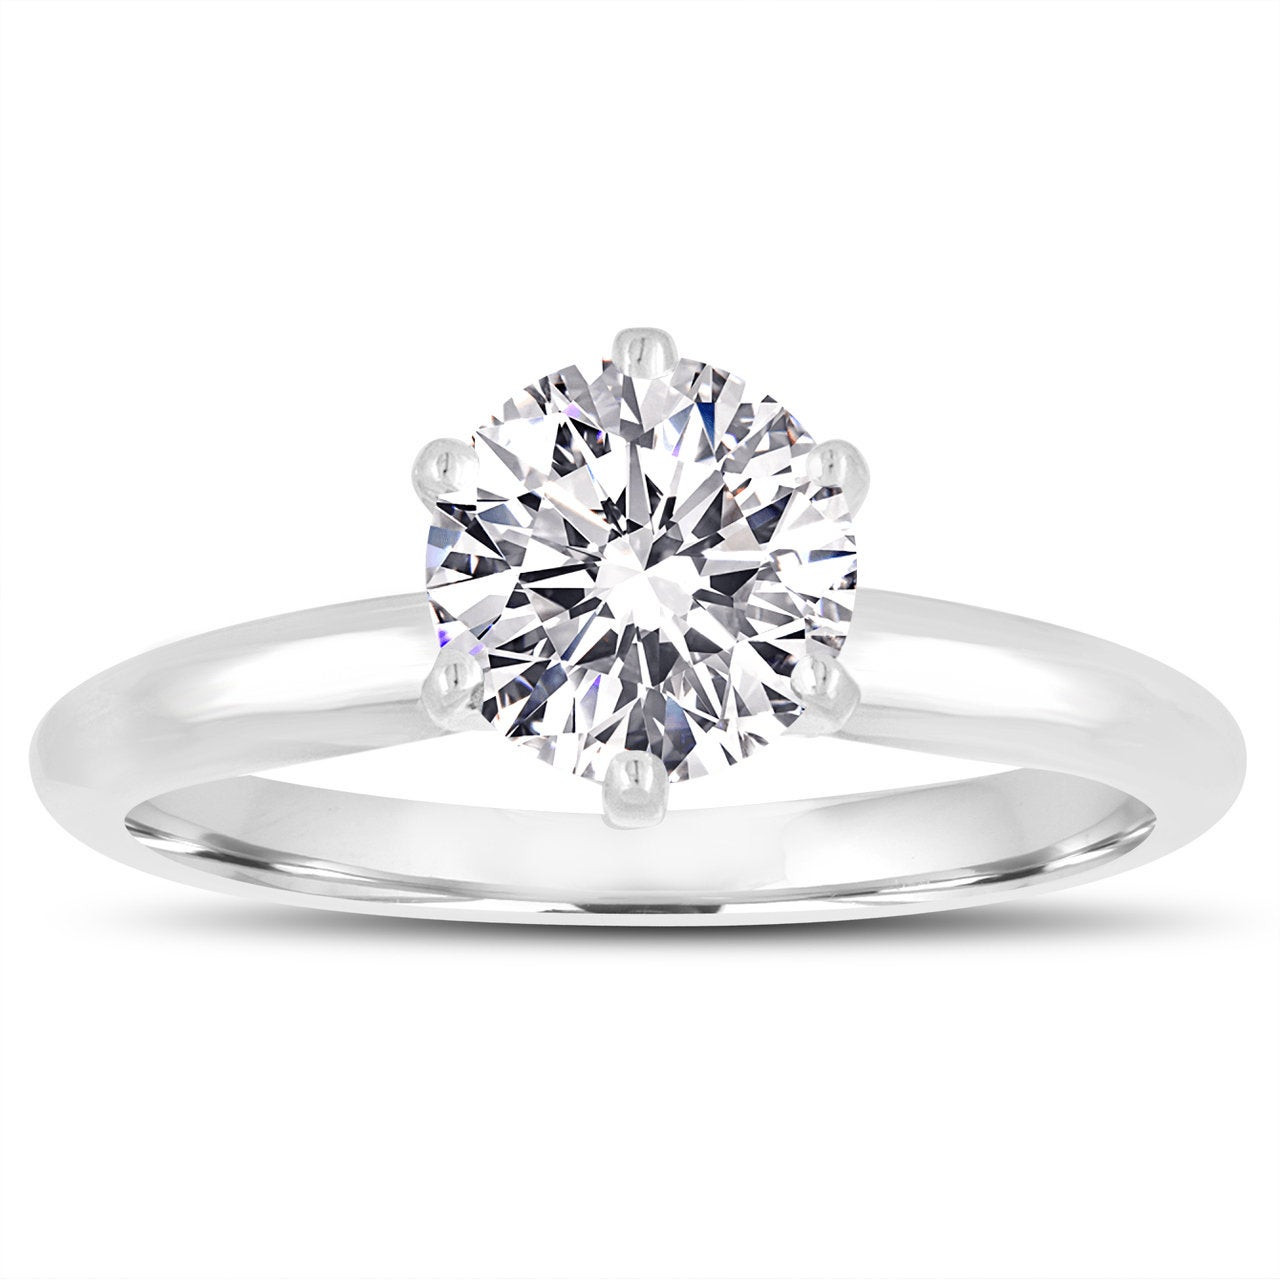 The Mario Black Diamond Ring For Him - 0.50 carat - Platinum - Diamond  Jewellery at Best Prices in India | SarvadaJewels.com